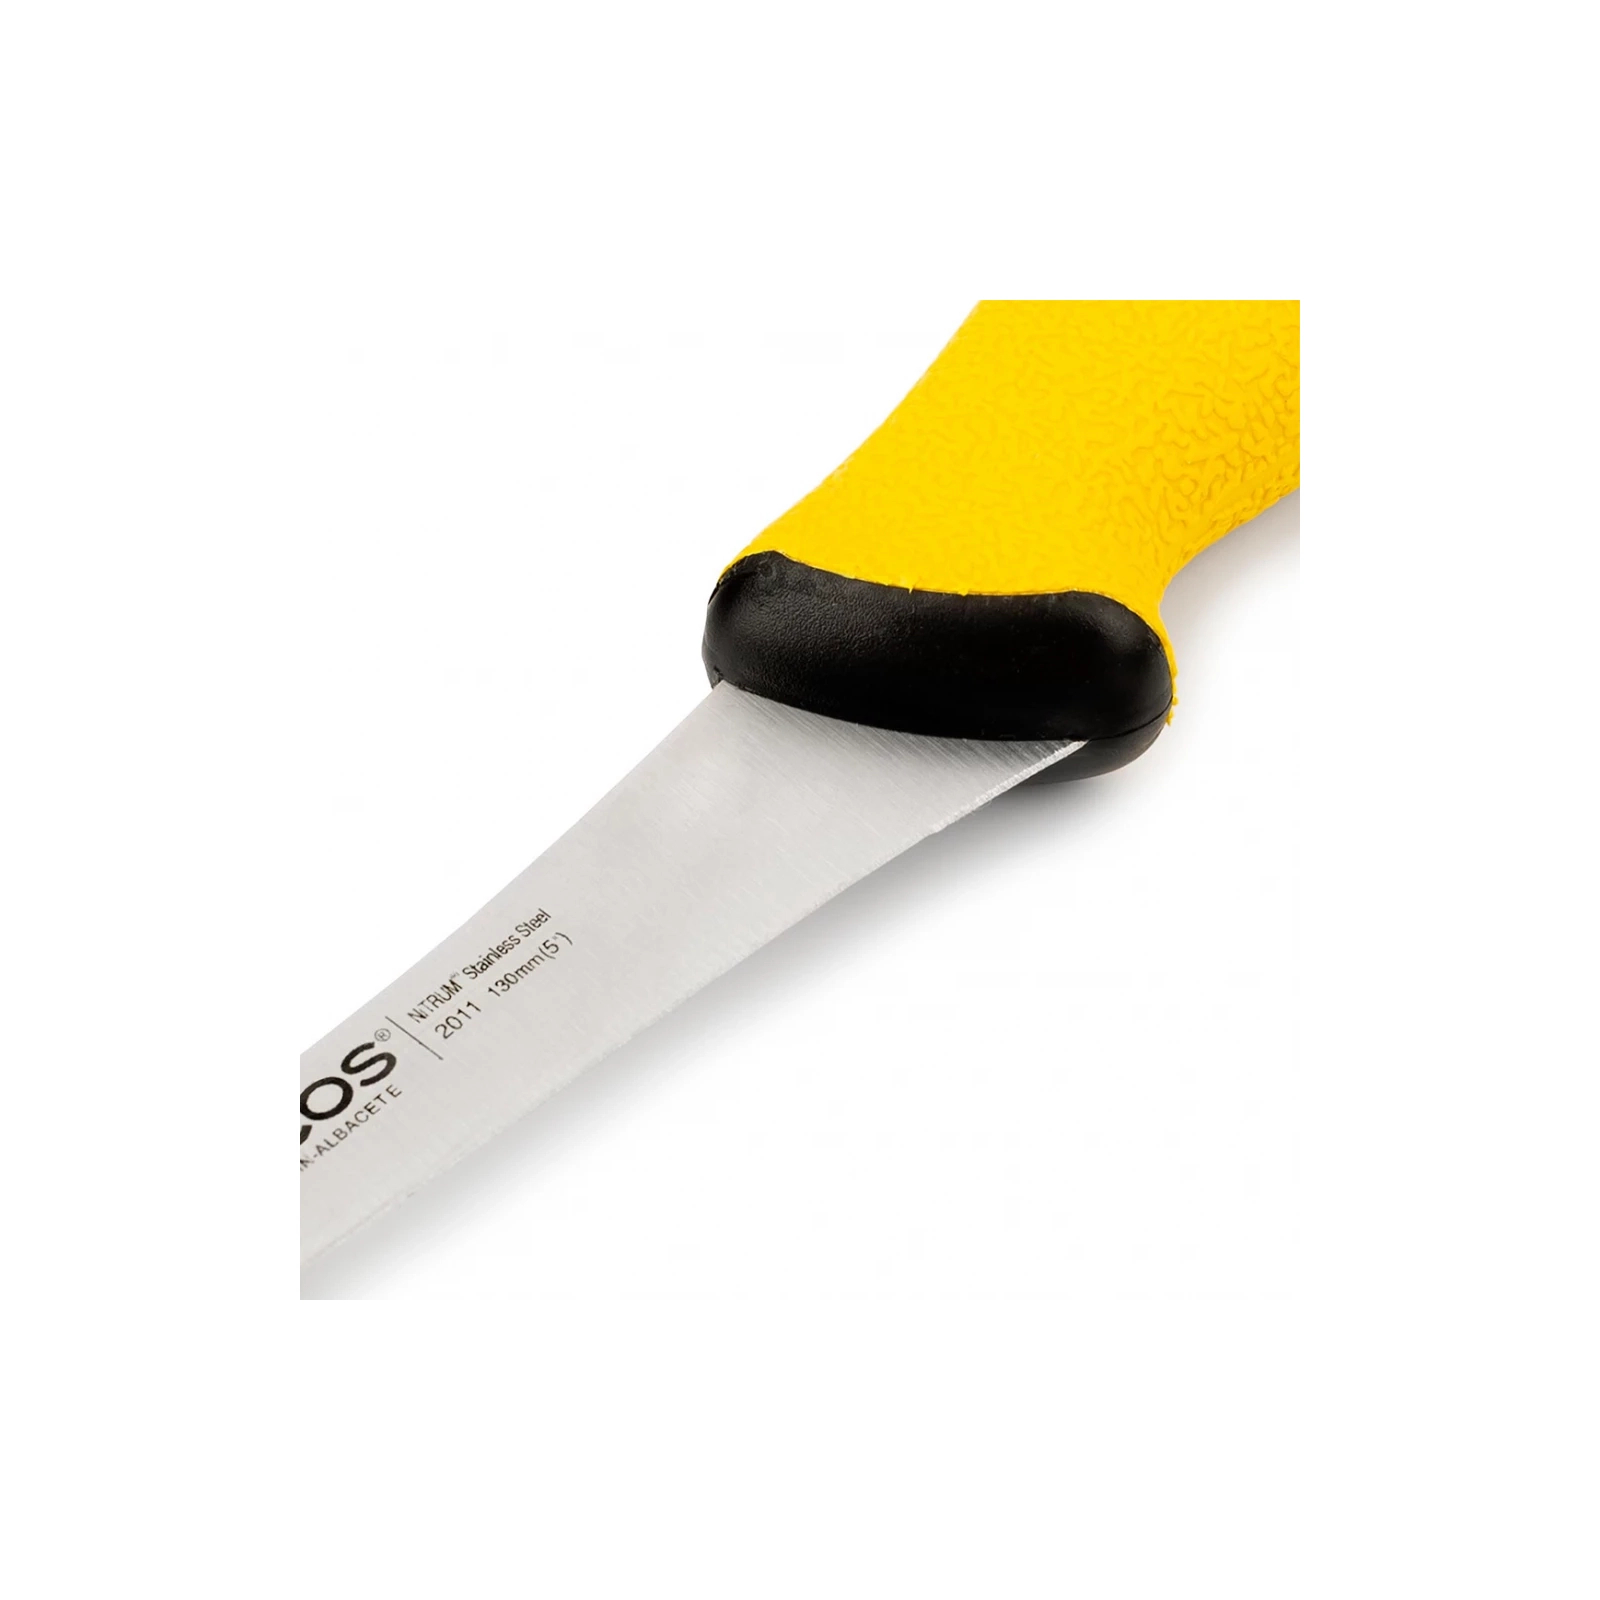 Кухонный нож Arcos Duo Pro обвалювальний 150 мм зі скошеним лезом (201700) изображение 2